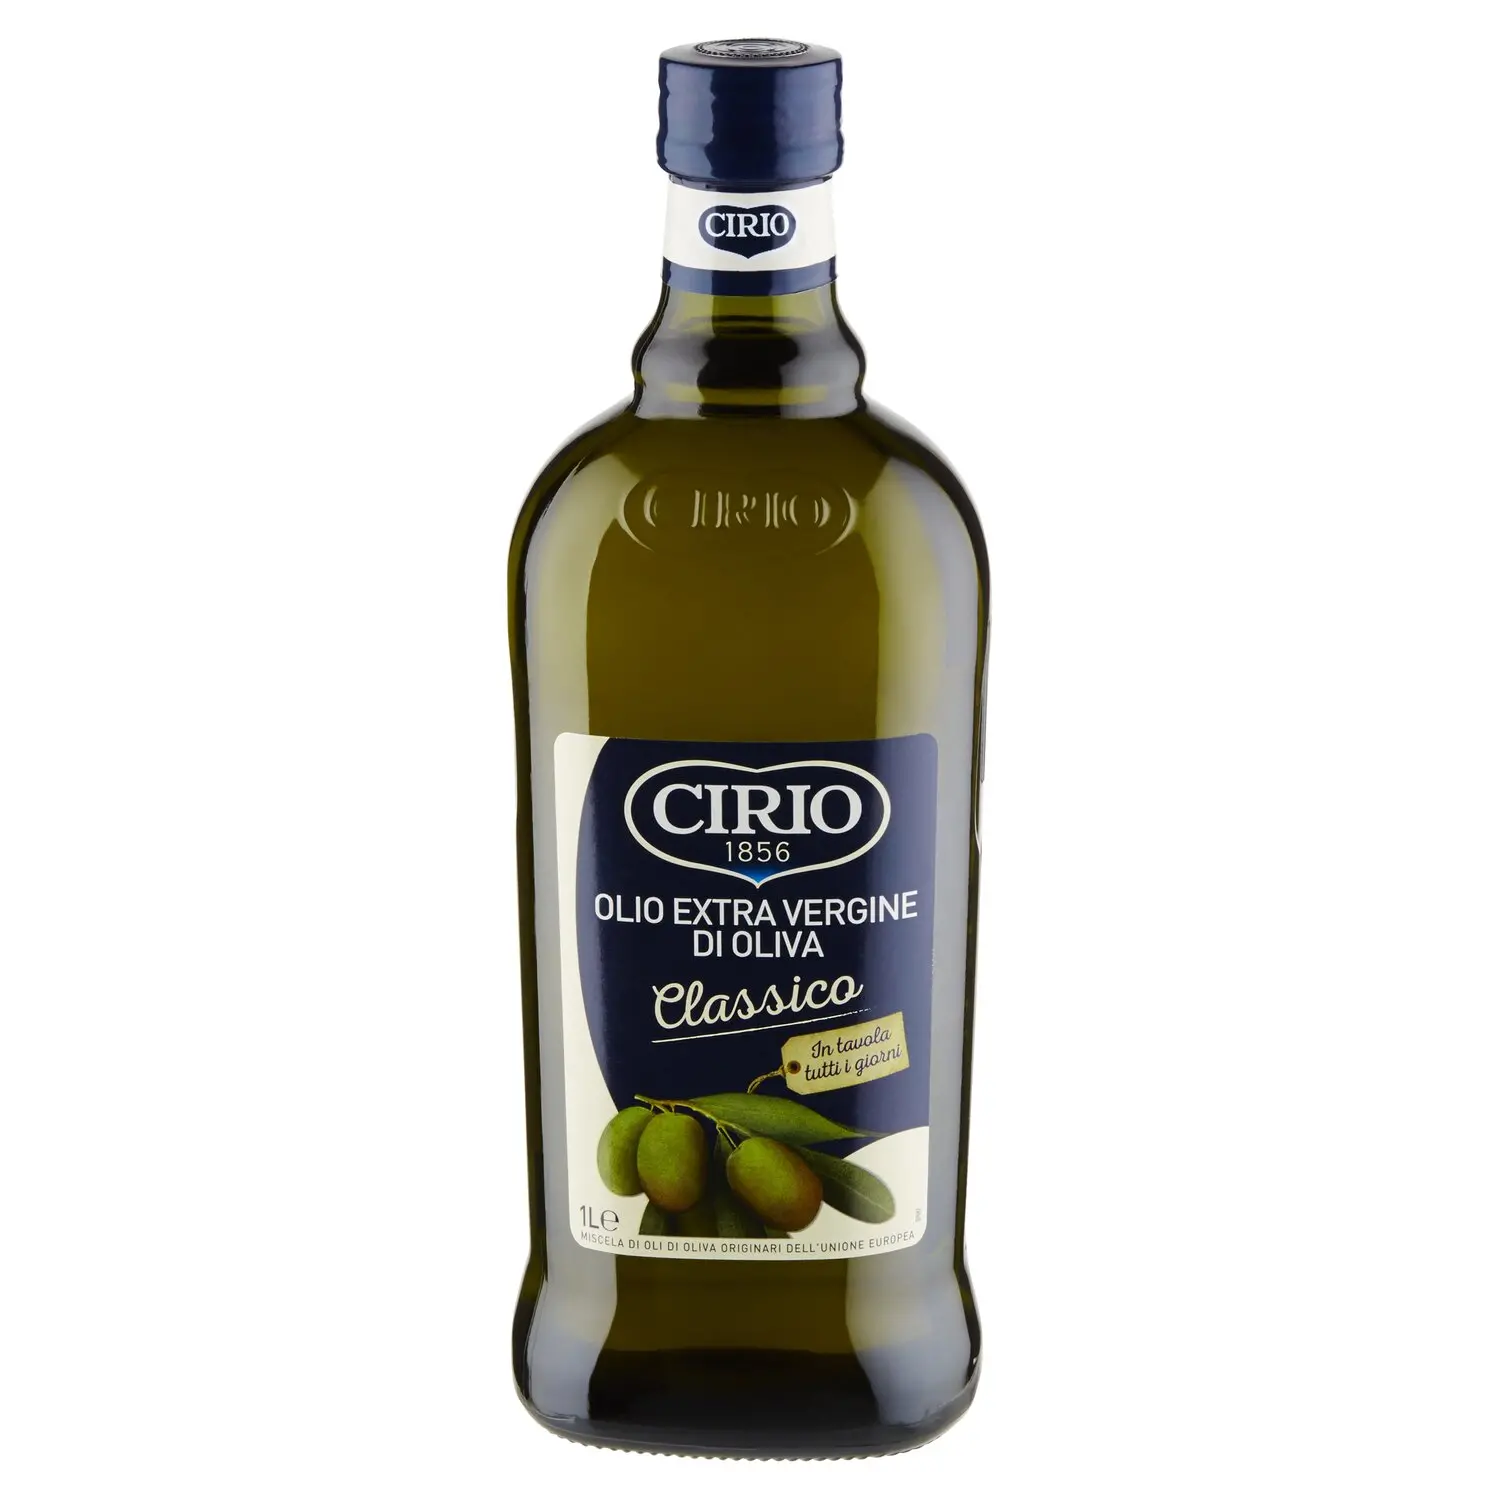 Olio extra vergine d'oliva, Classico Spray